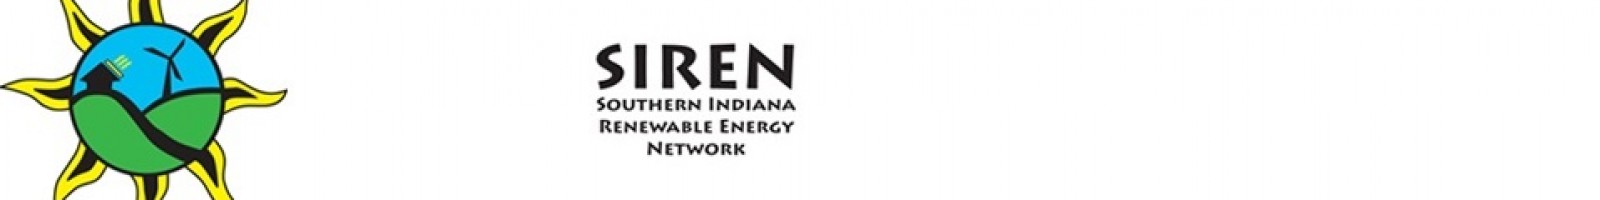 2008 – SIREN Volunteer Organization Formed!